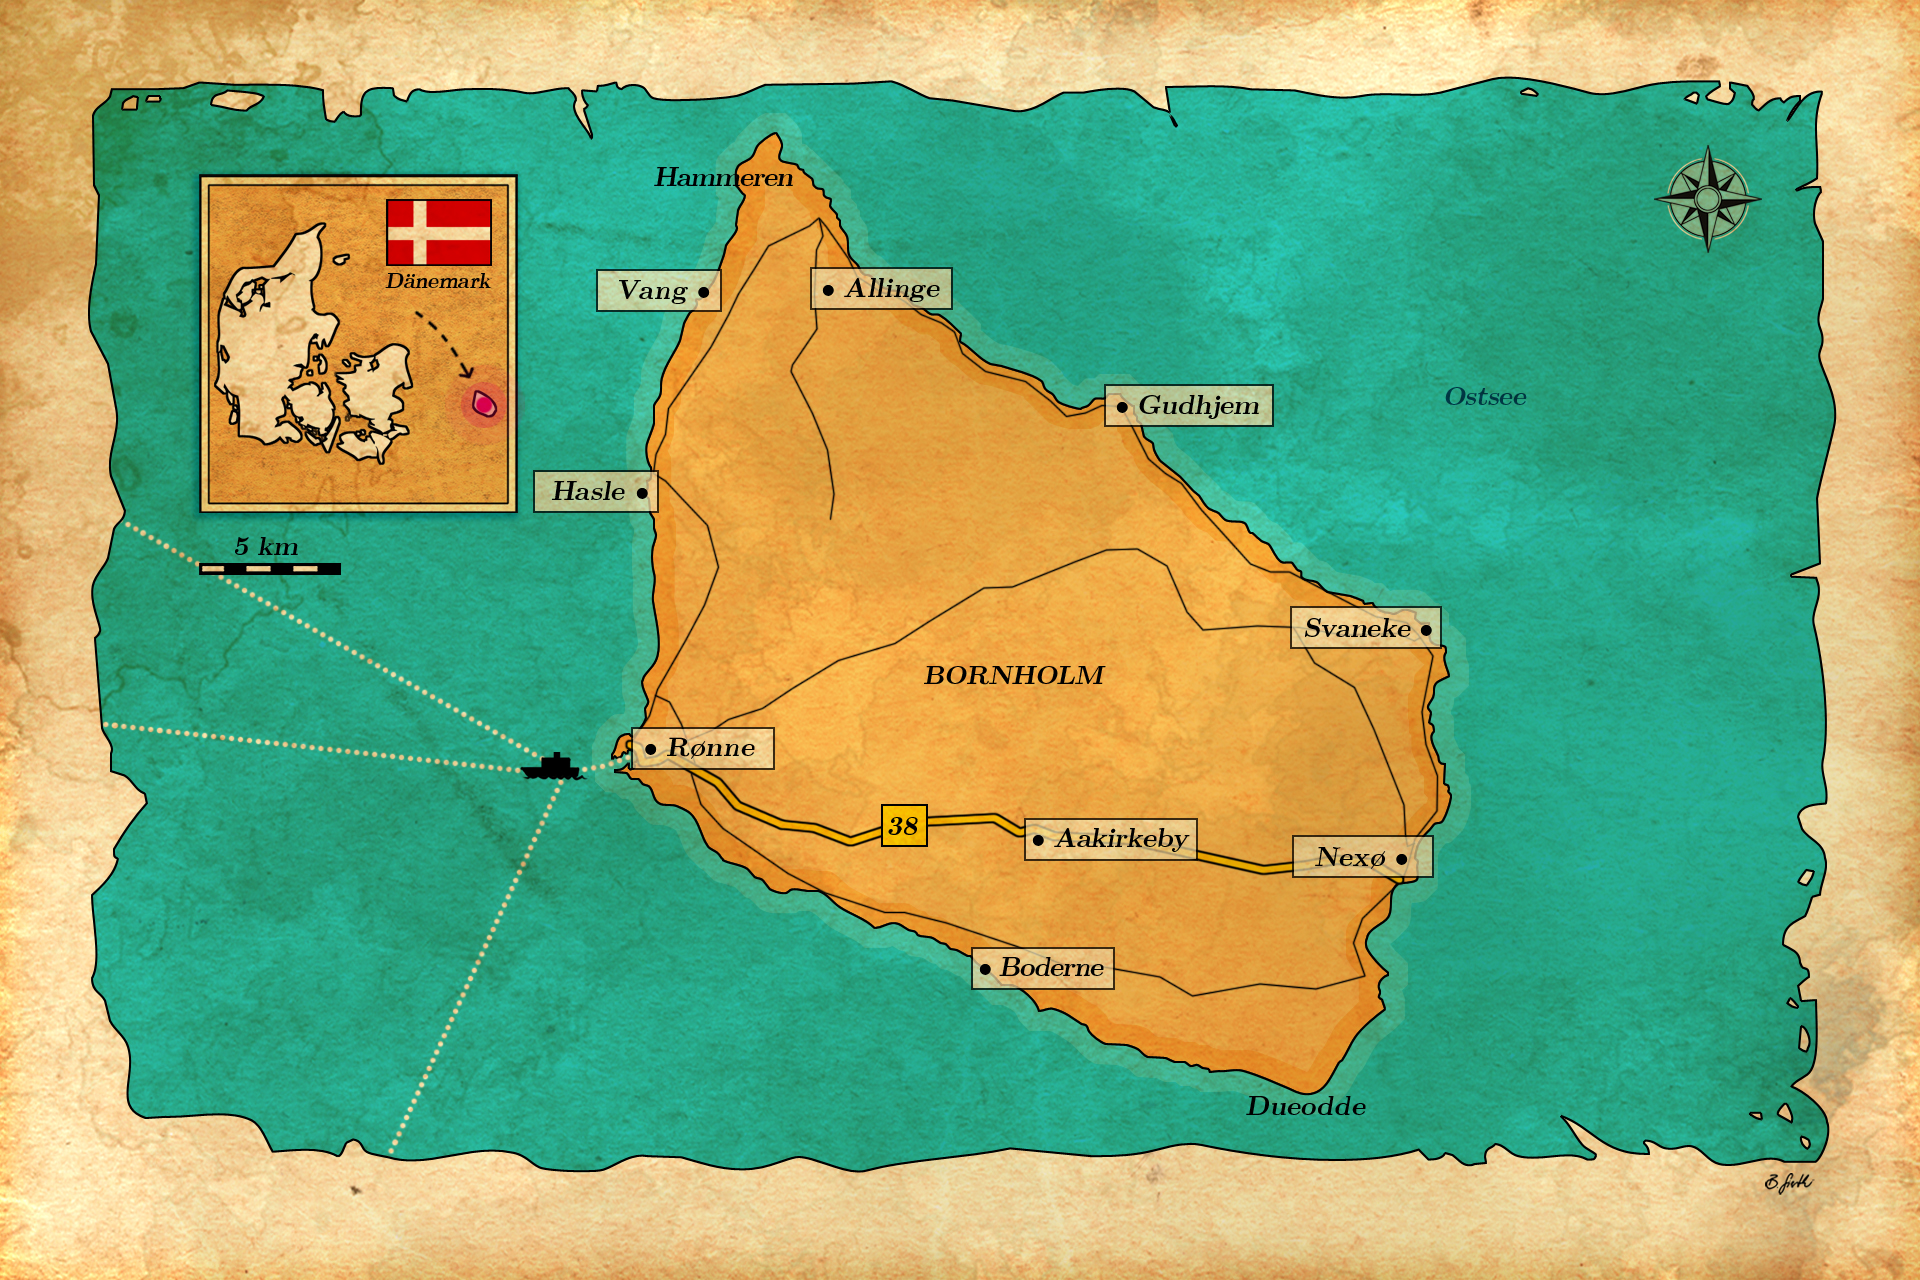 Bornholm Karte